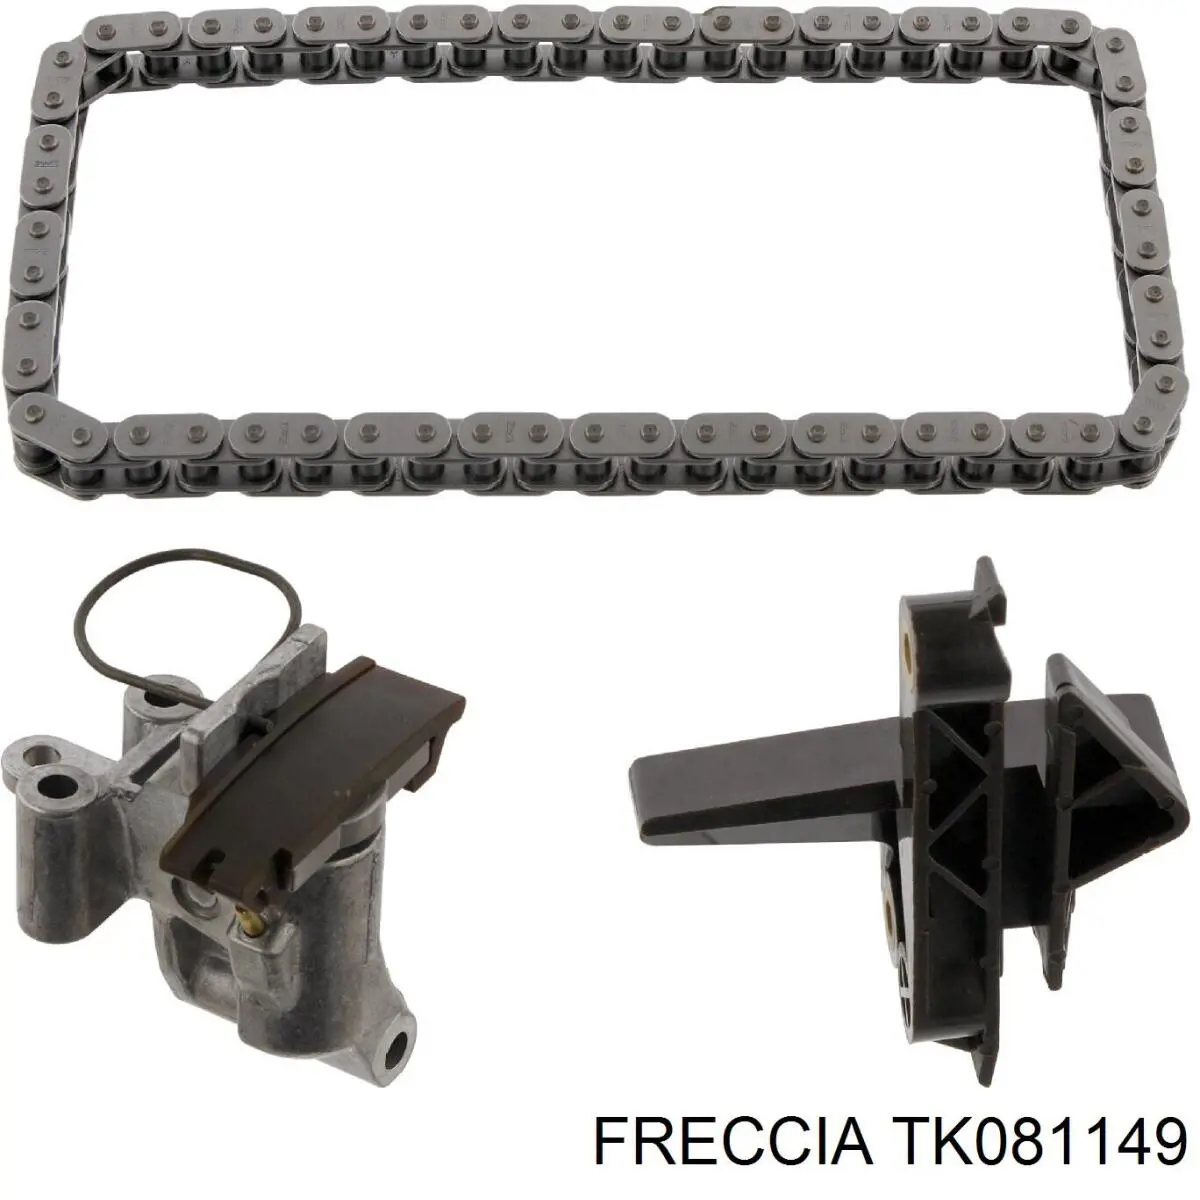 TK08-1149 Freccia цепь грм верхняя, комплект